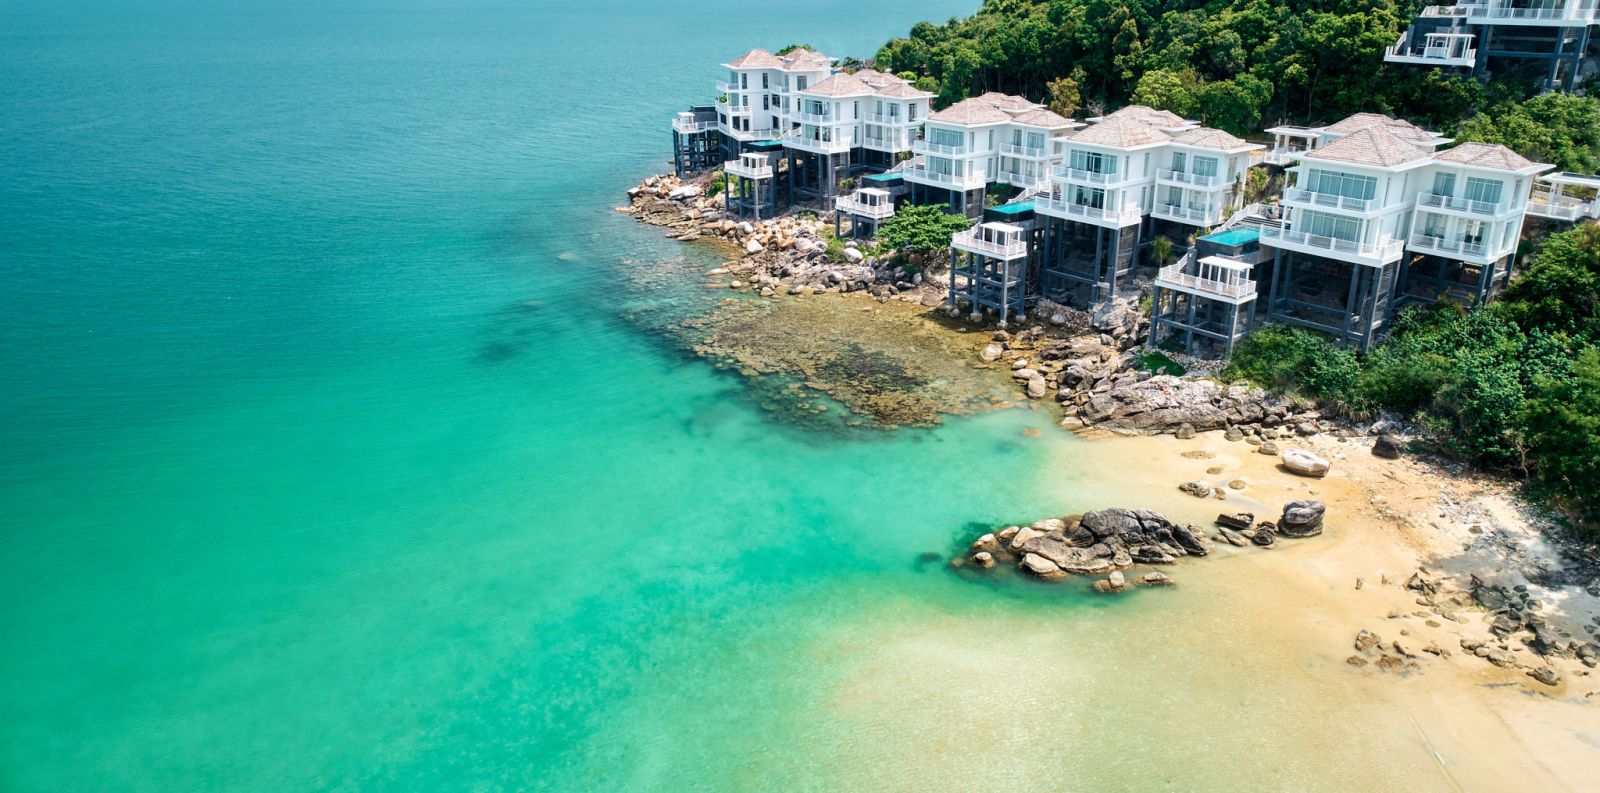 Khu nghỉ dưỡng Premier Village Phu Quoc Resort  sắp đi vào hoạt động